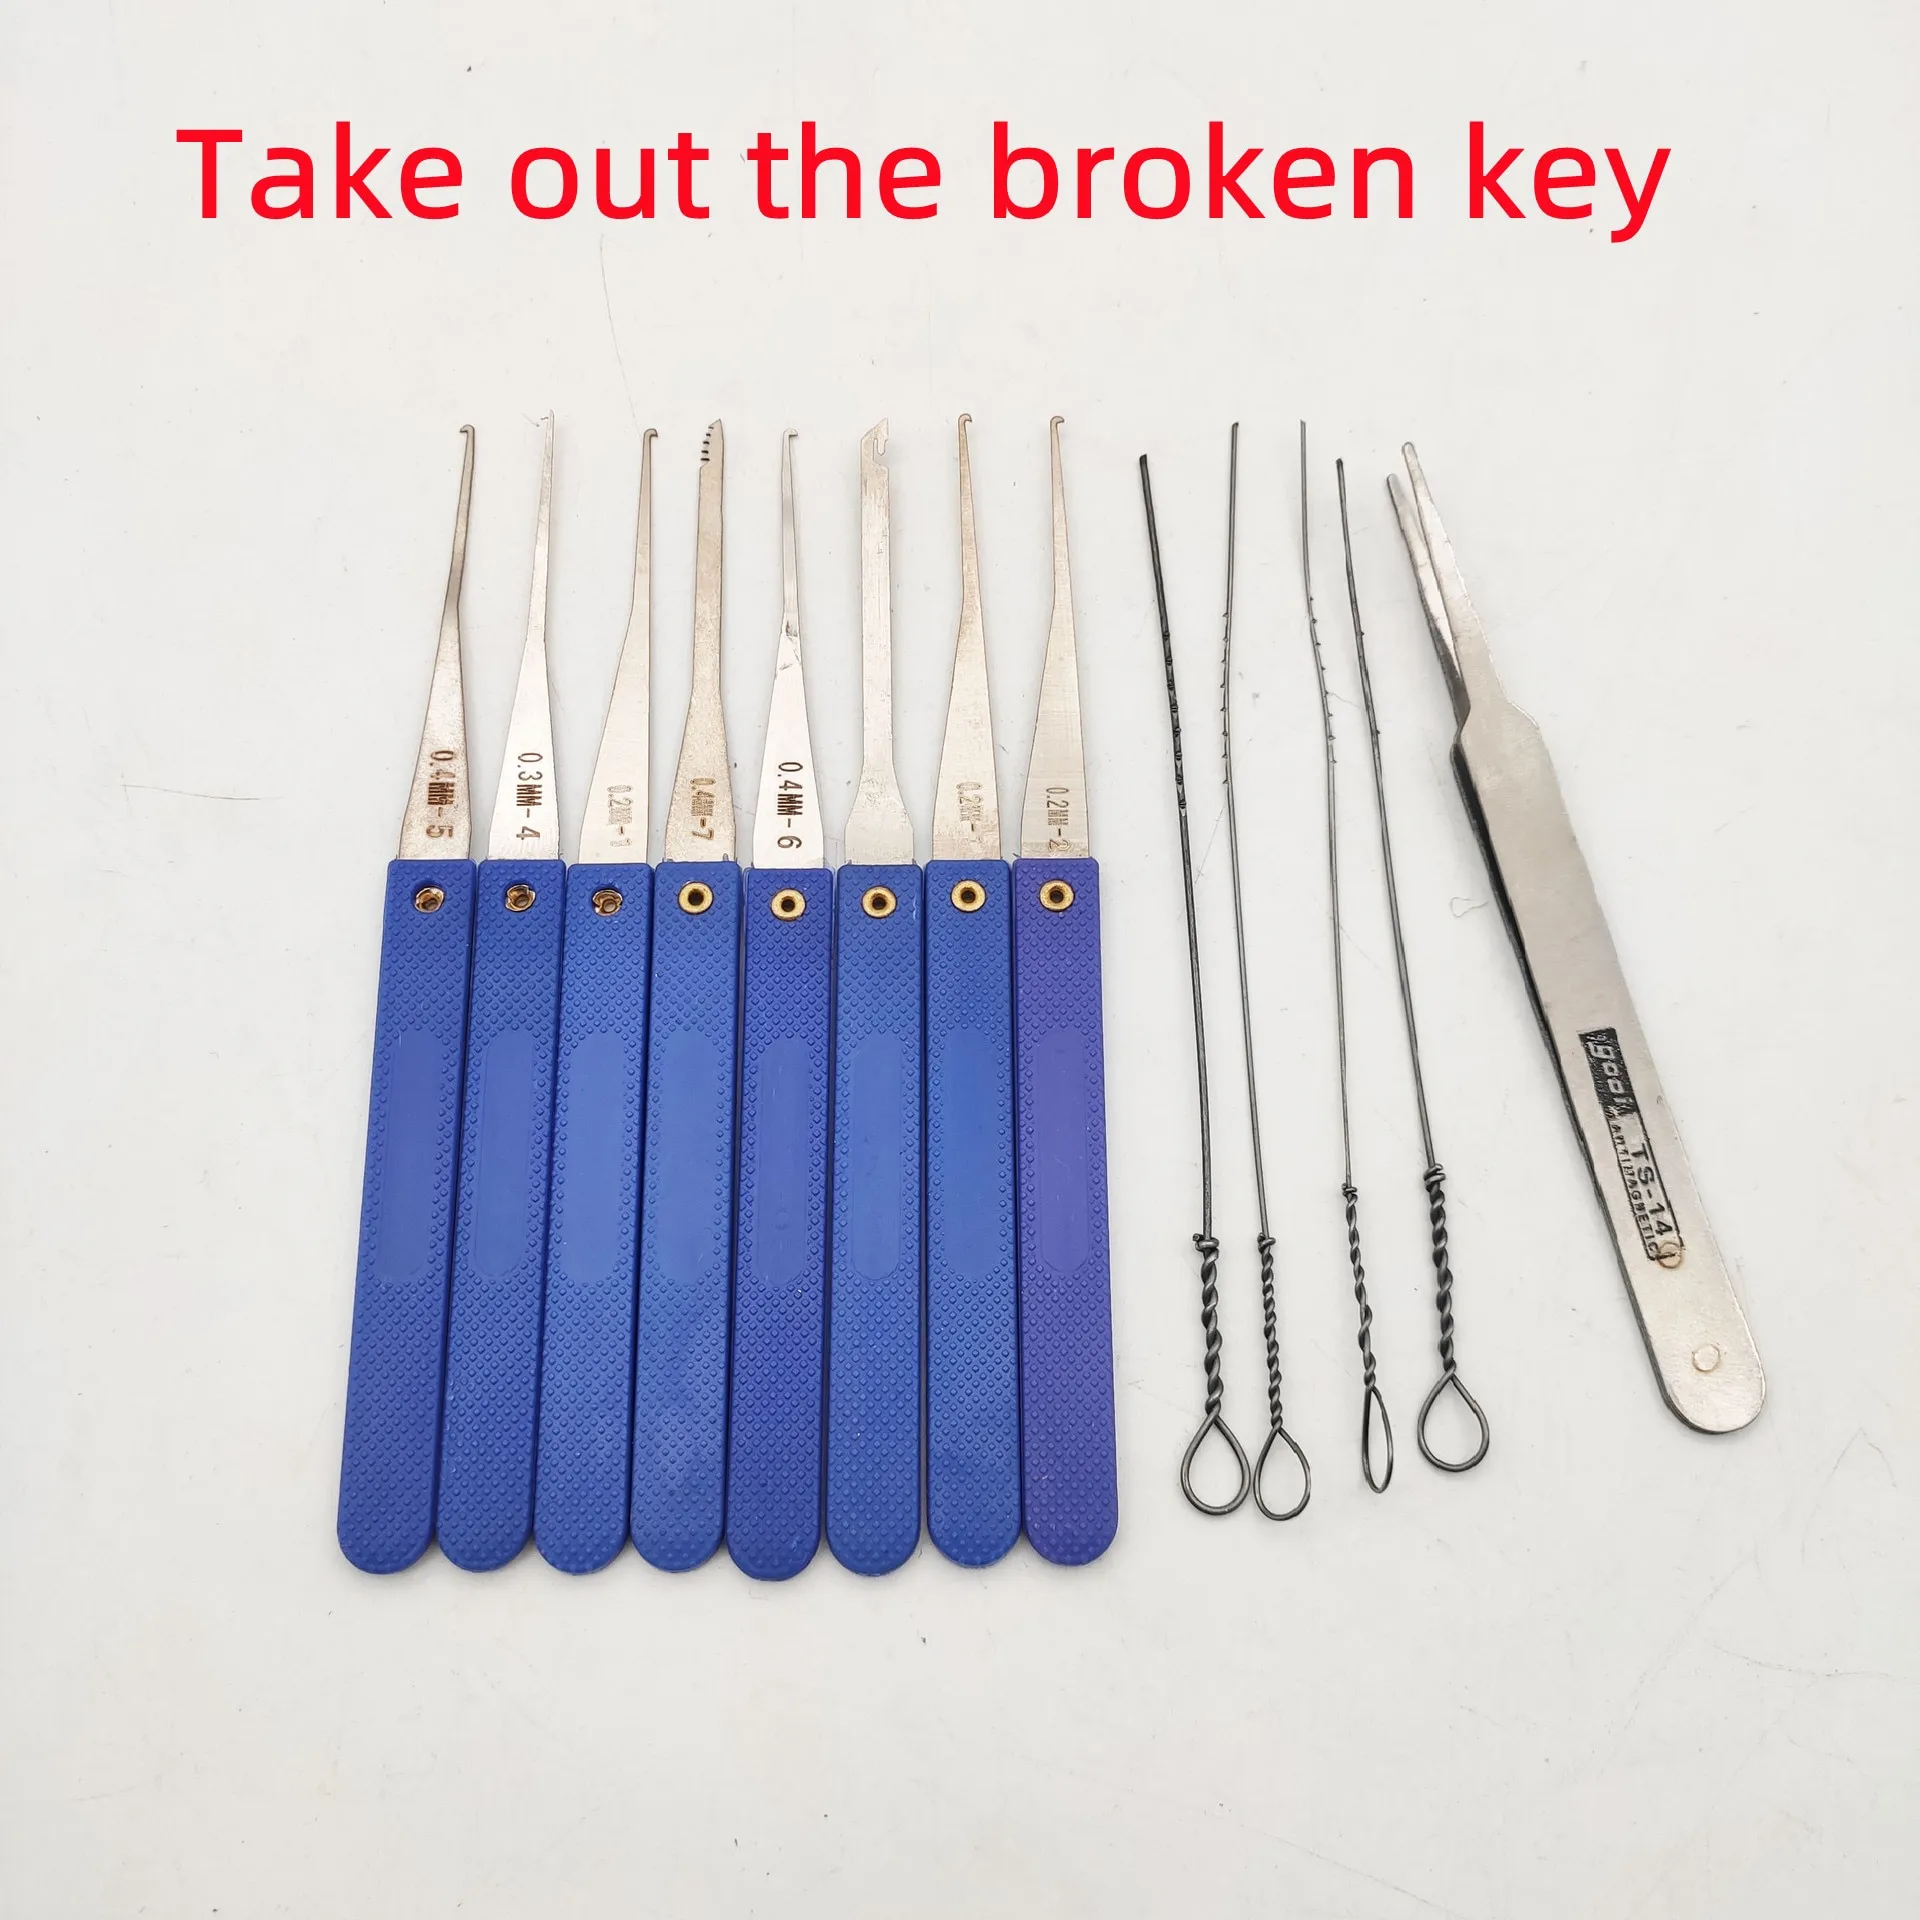 lockpicking werkzeug – Kaufen Sie lockpicking werkzeug mit kostenlosem  Versand auf AliExpress version